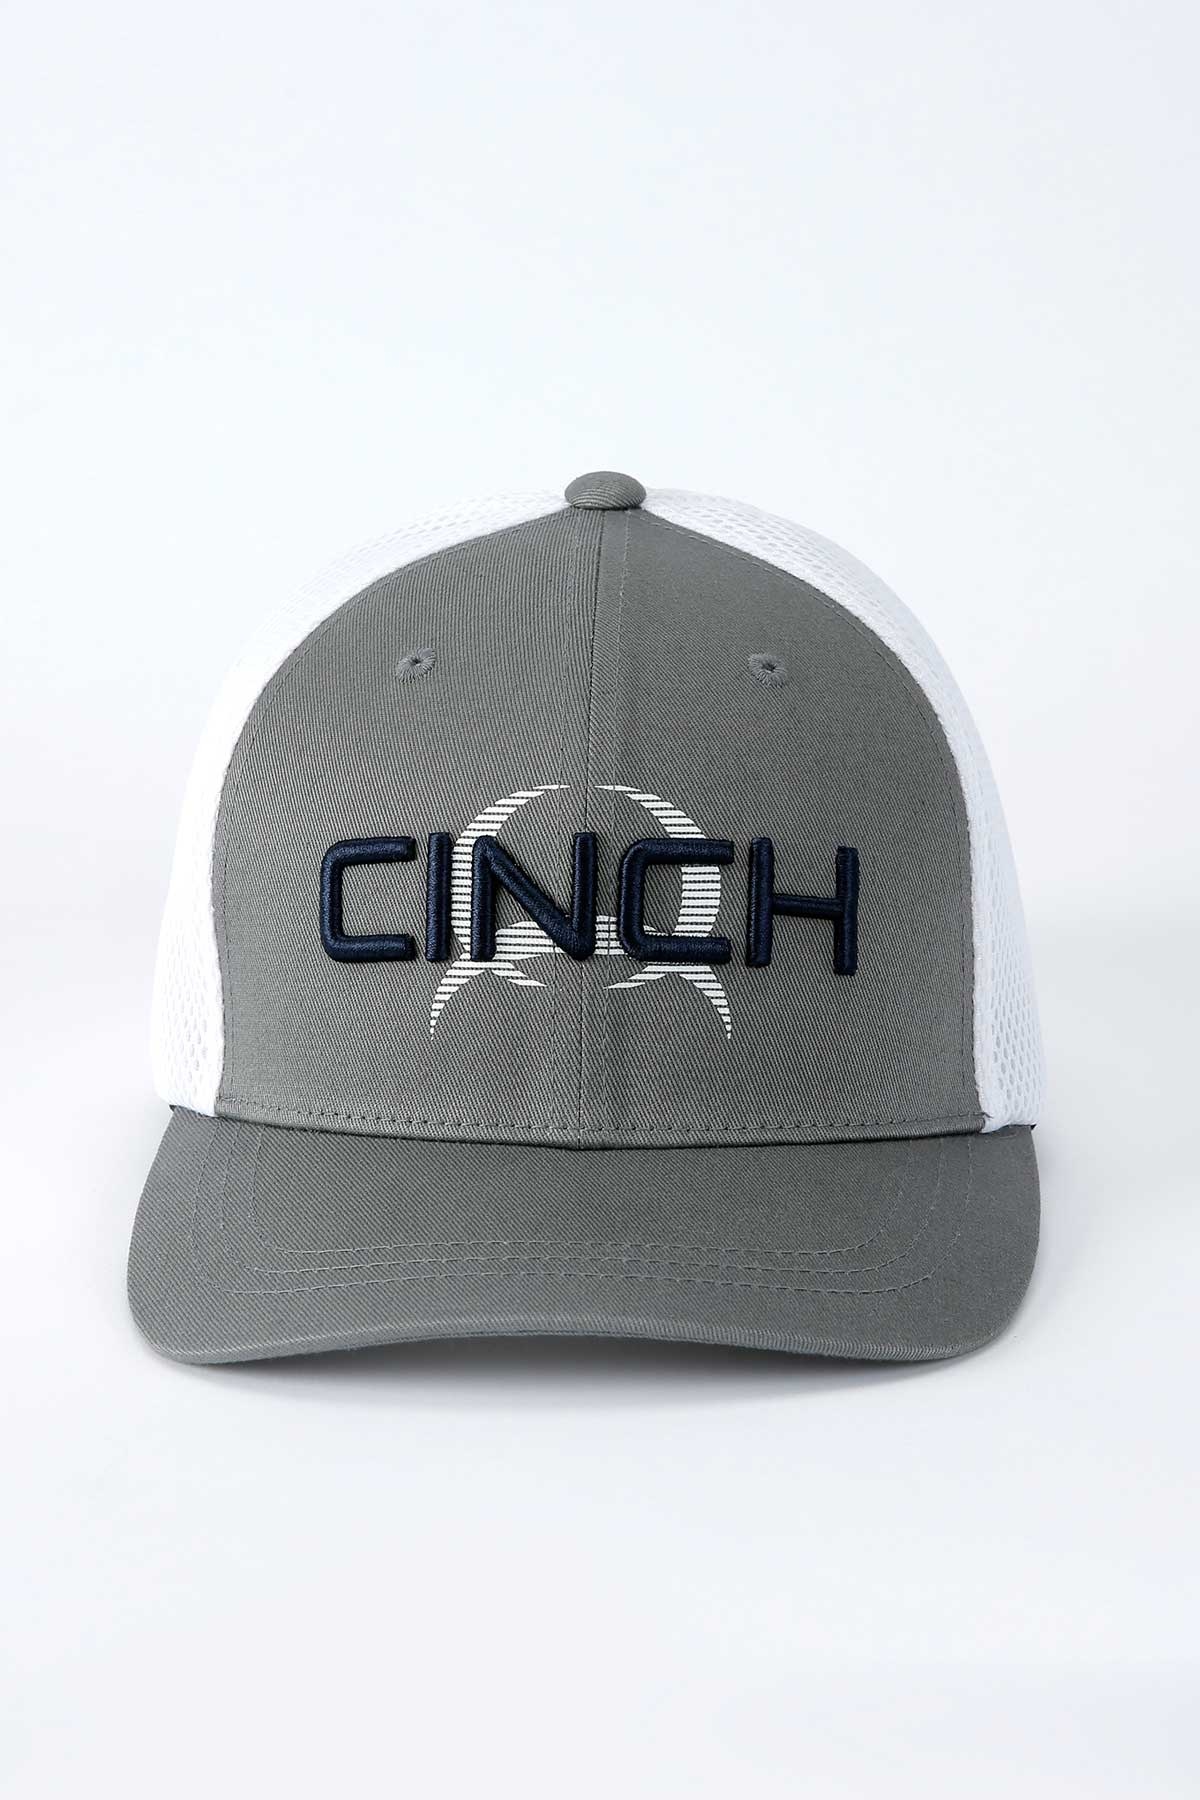 CINCH GRAY FLEXFIT CAP MCC0653311 - Corral Western Wear